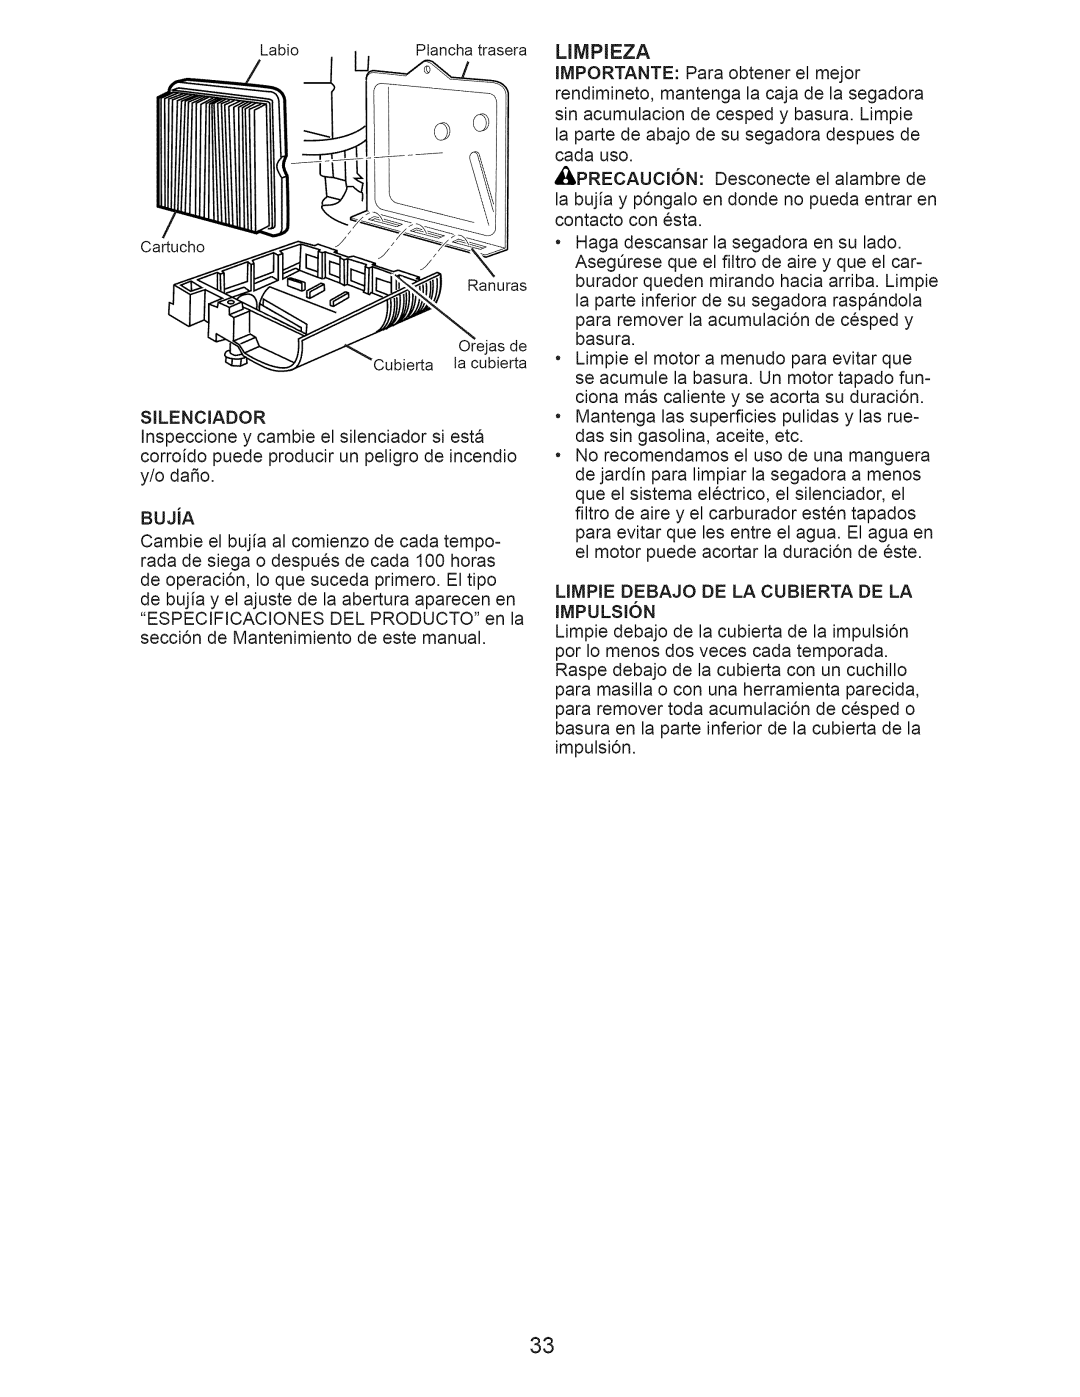 Craftsman 917.376232 manual Limpieza, LIMPIE DEBAJO DE LA CUBIERTA DE LA IMPULSI6N 